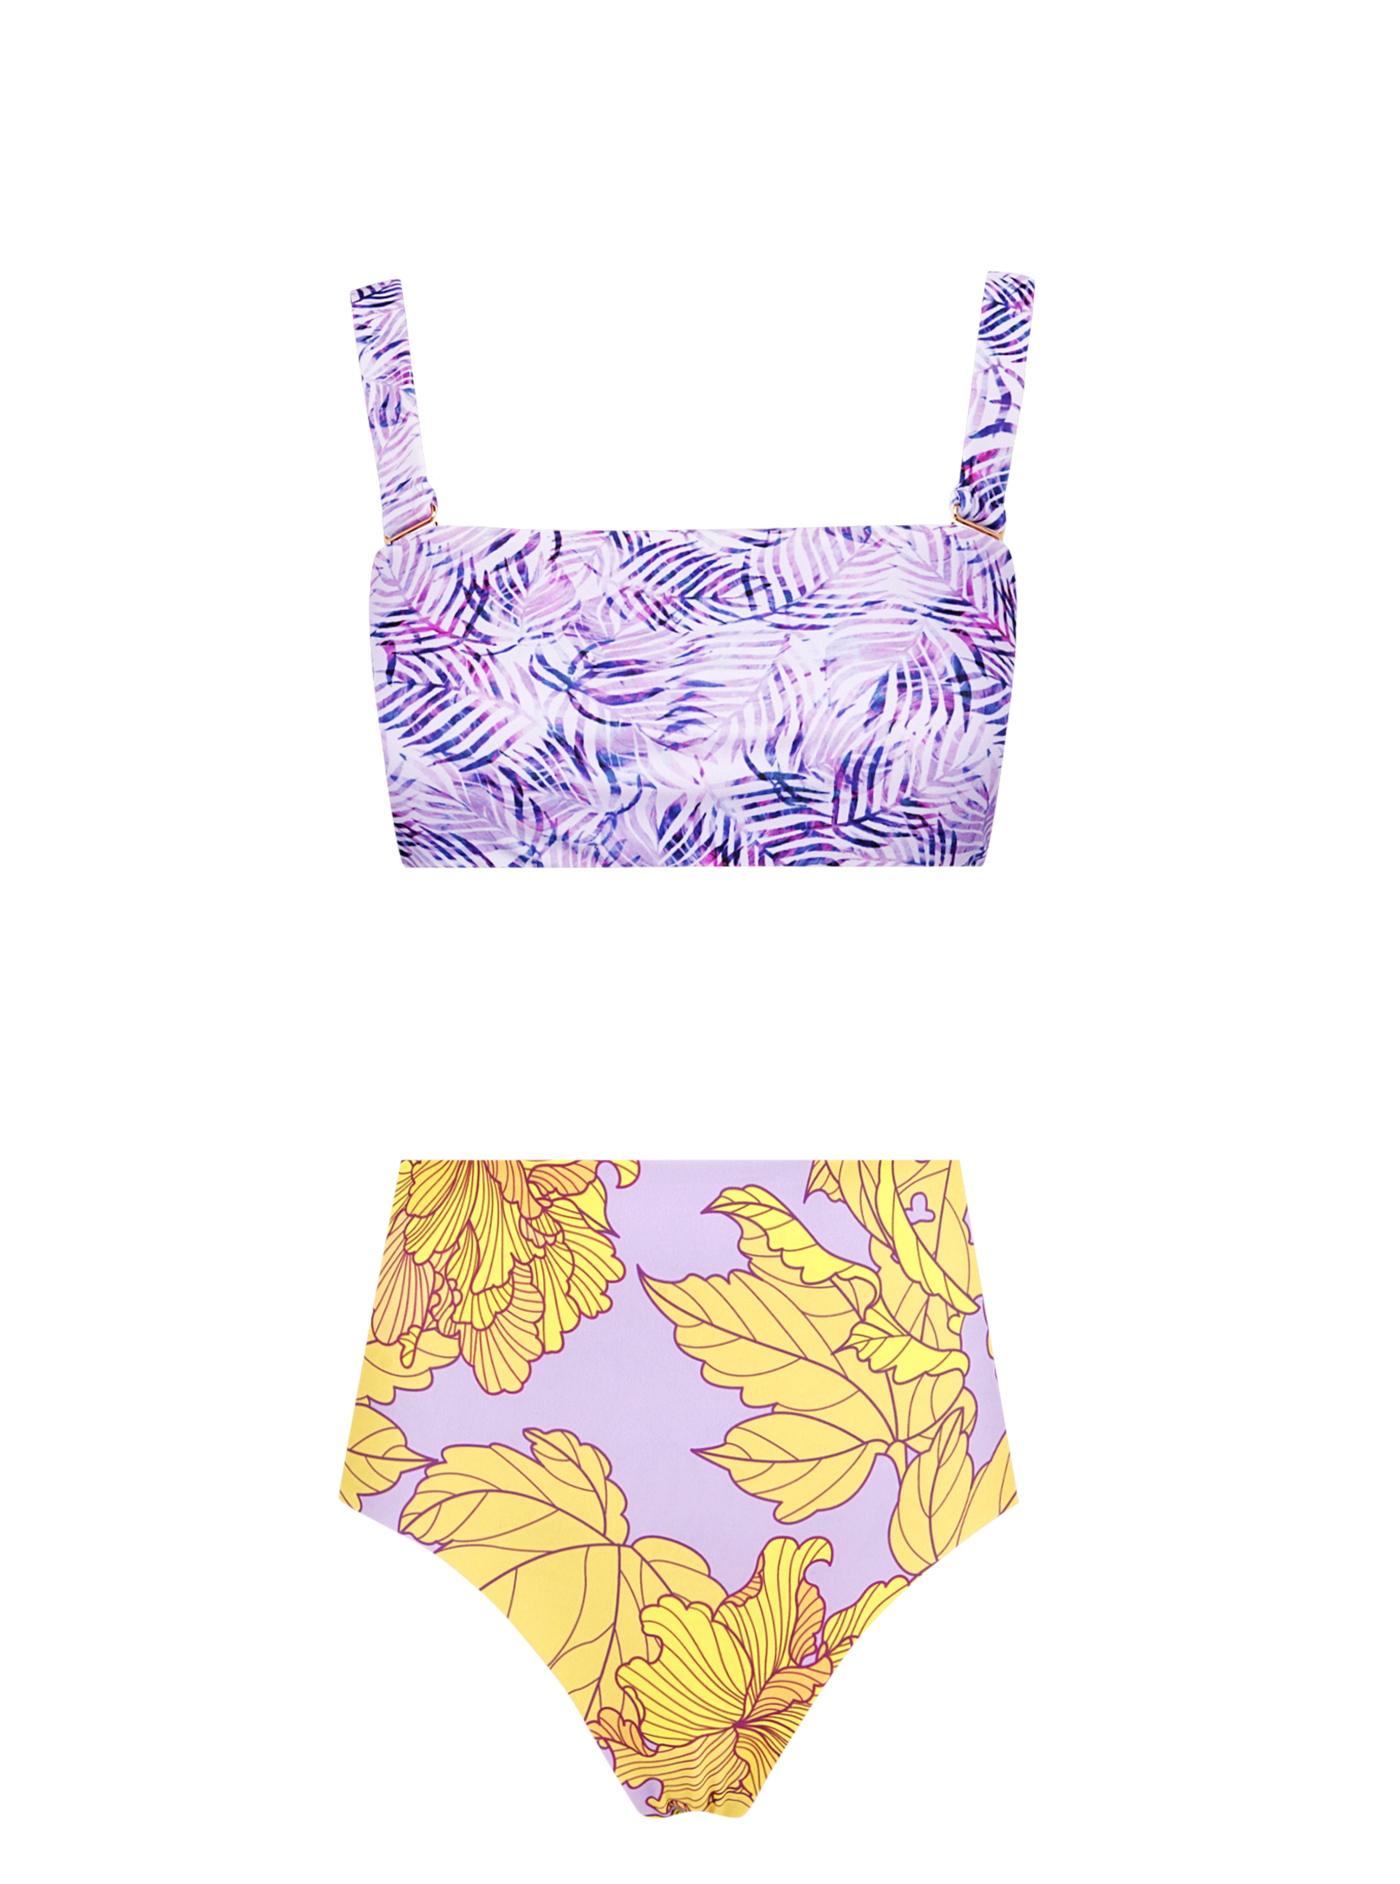 Hibiscus 8-in-1 Ruffled Bikini Set